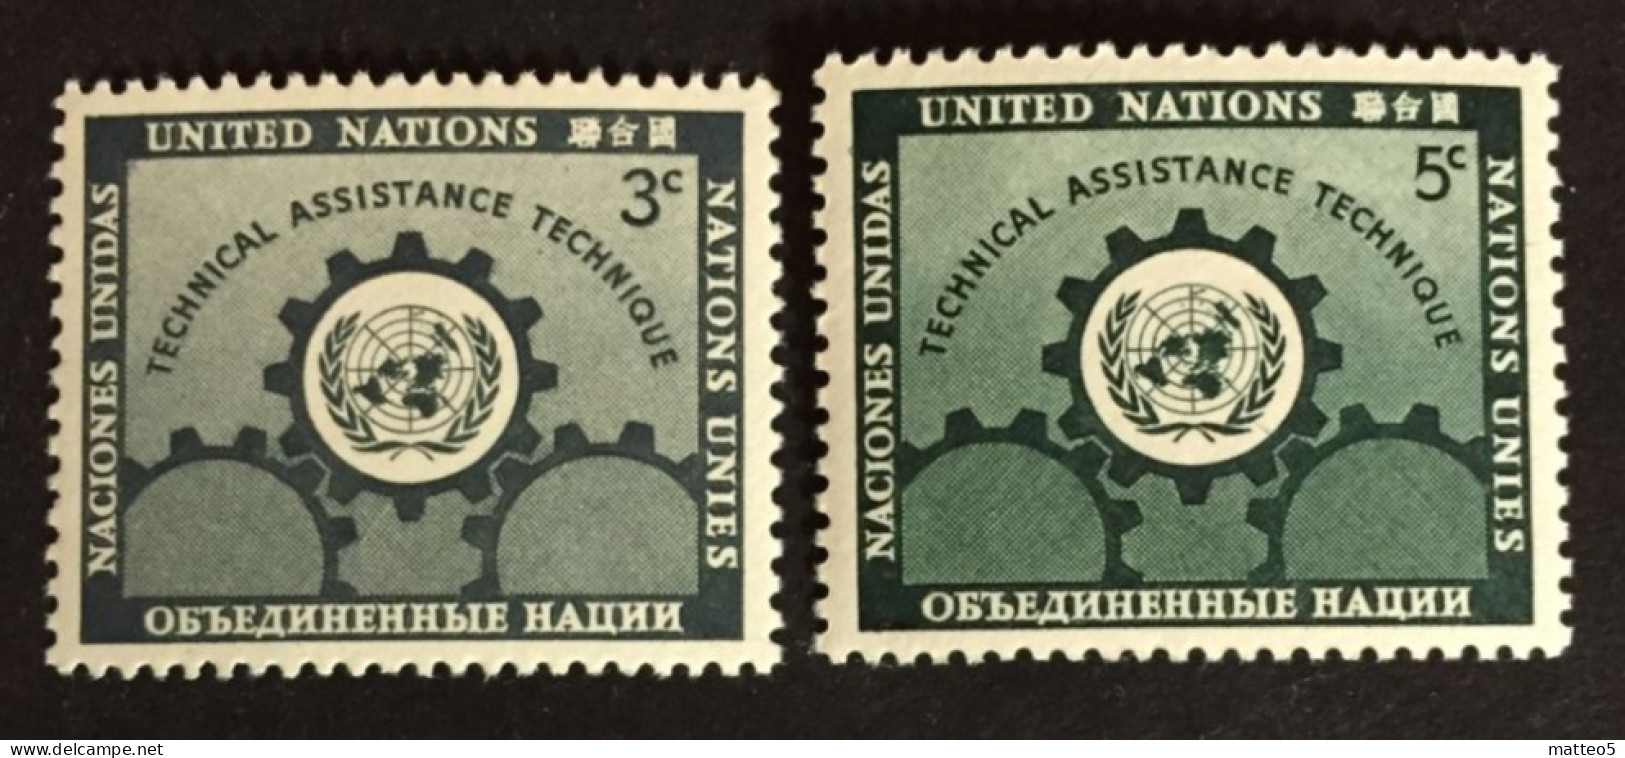 1953 - United Nations UNO UN ONU - Technical Assistance  - Unused - Ongebruikt